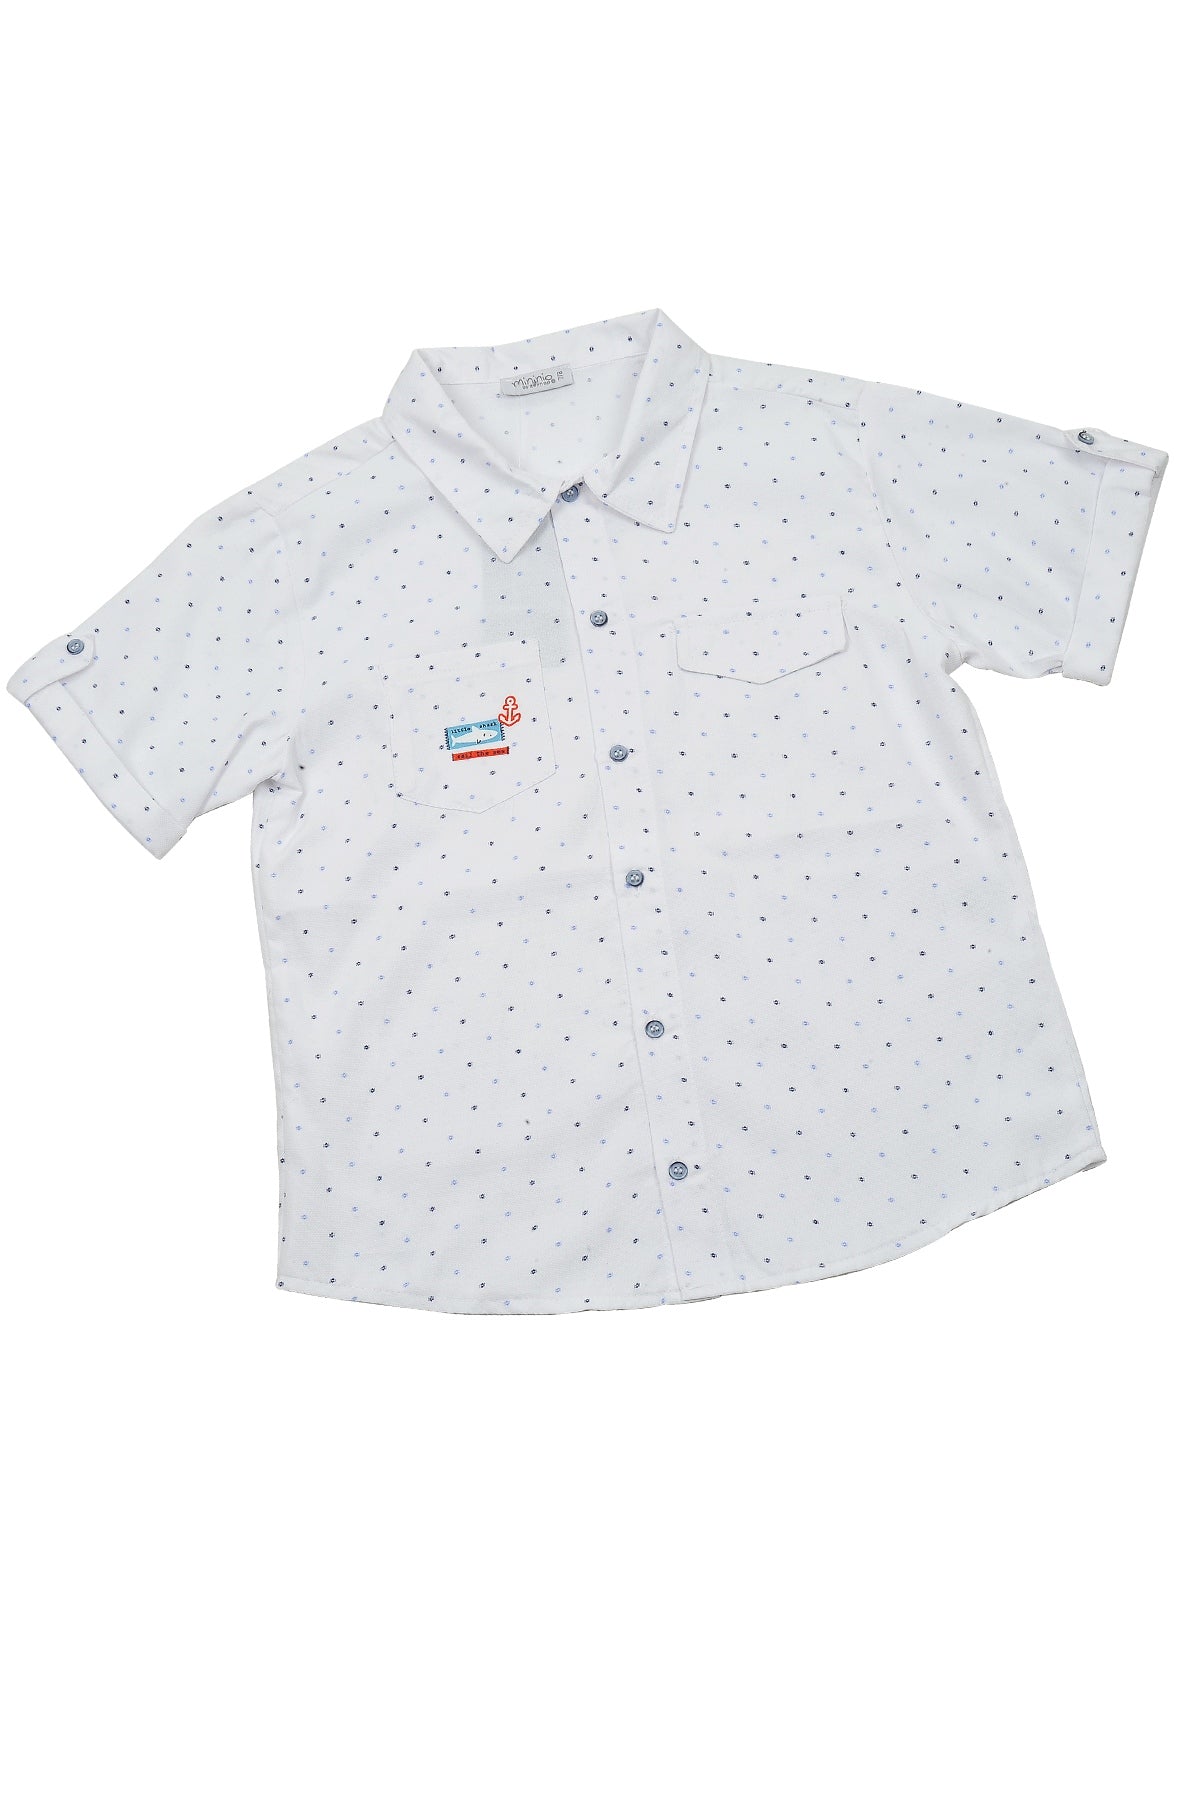 Erkek Çocuk Beyaz Desenli Cepli Marin Gömlek (5-14yaş)-0